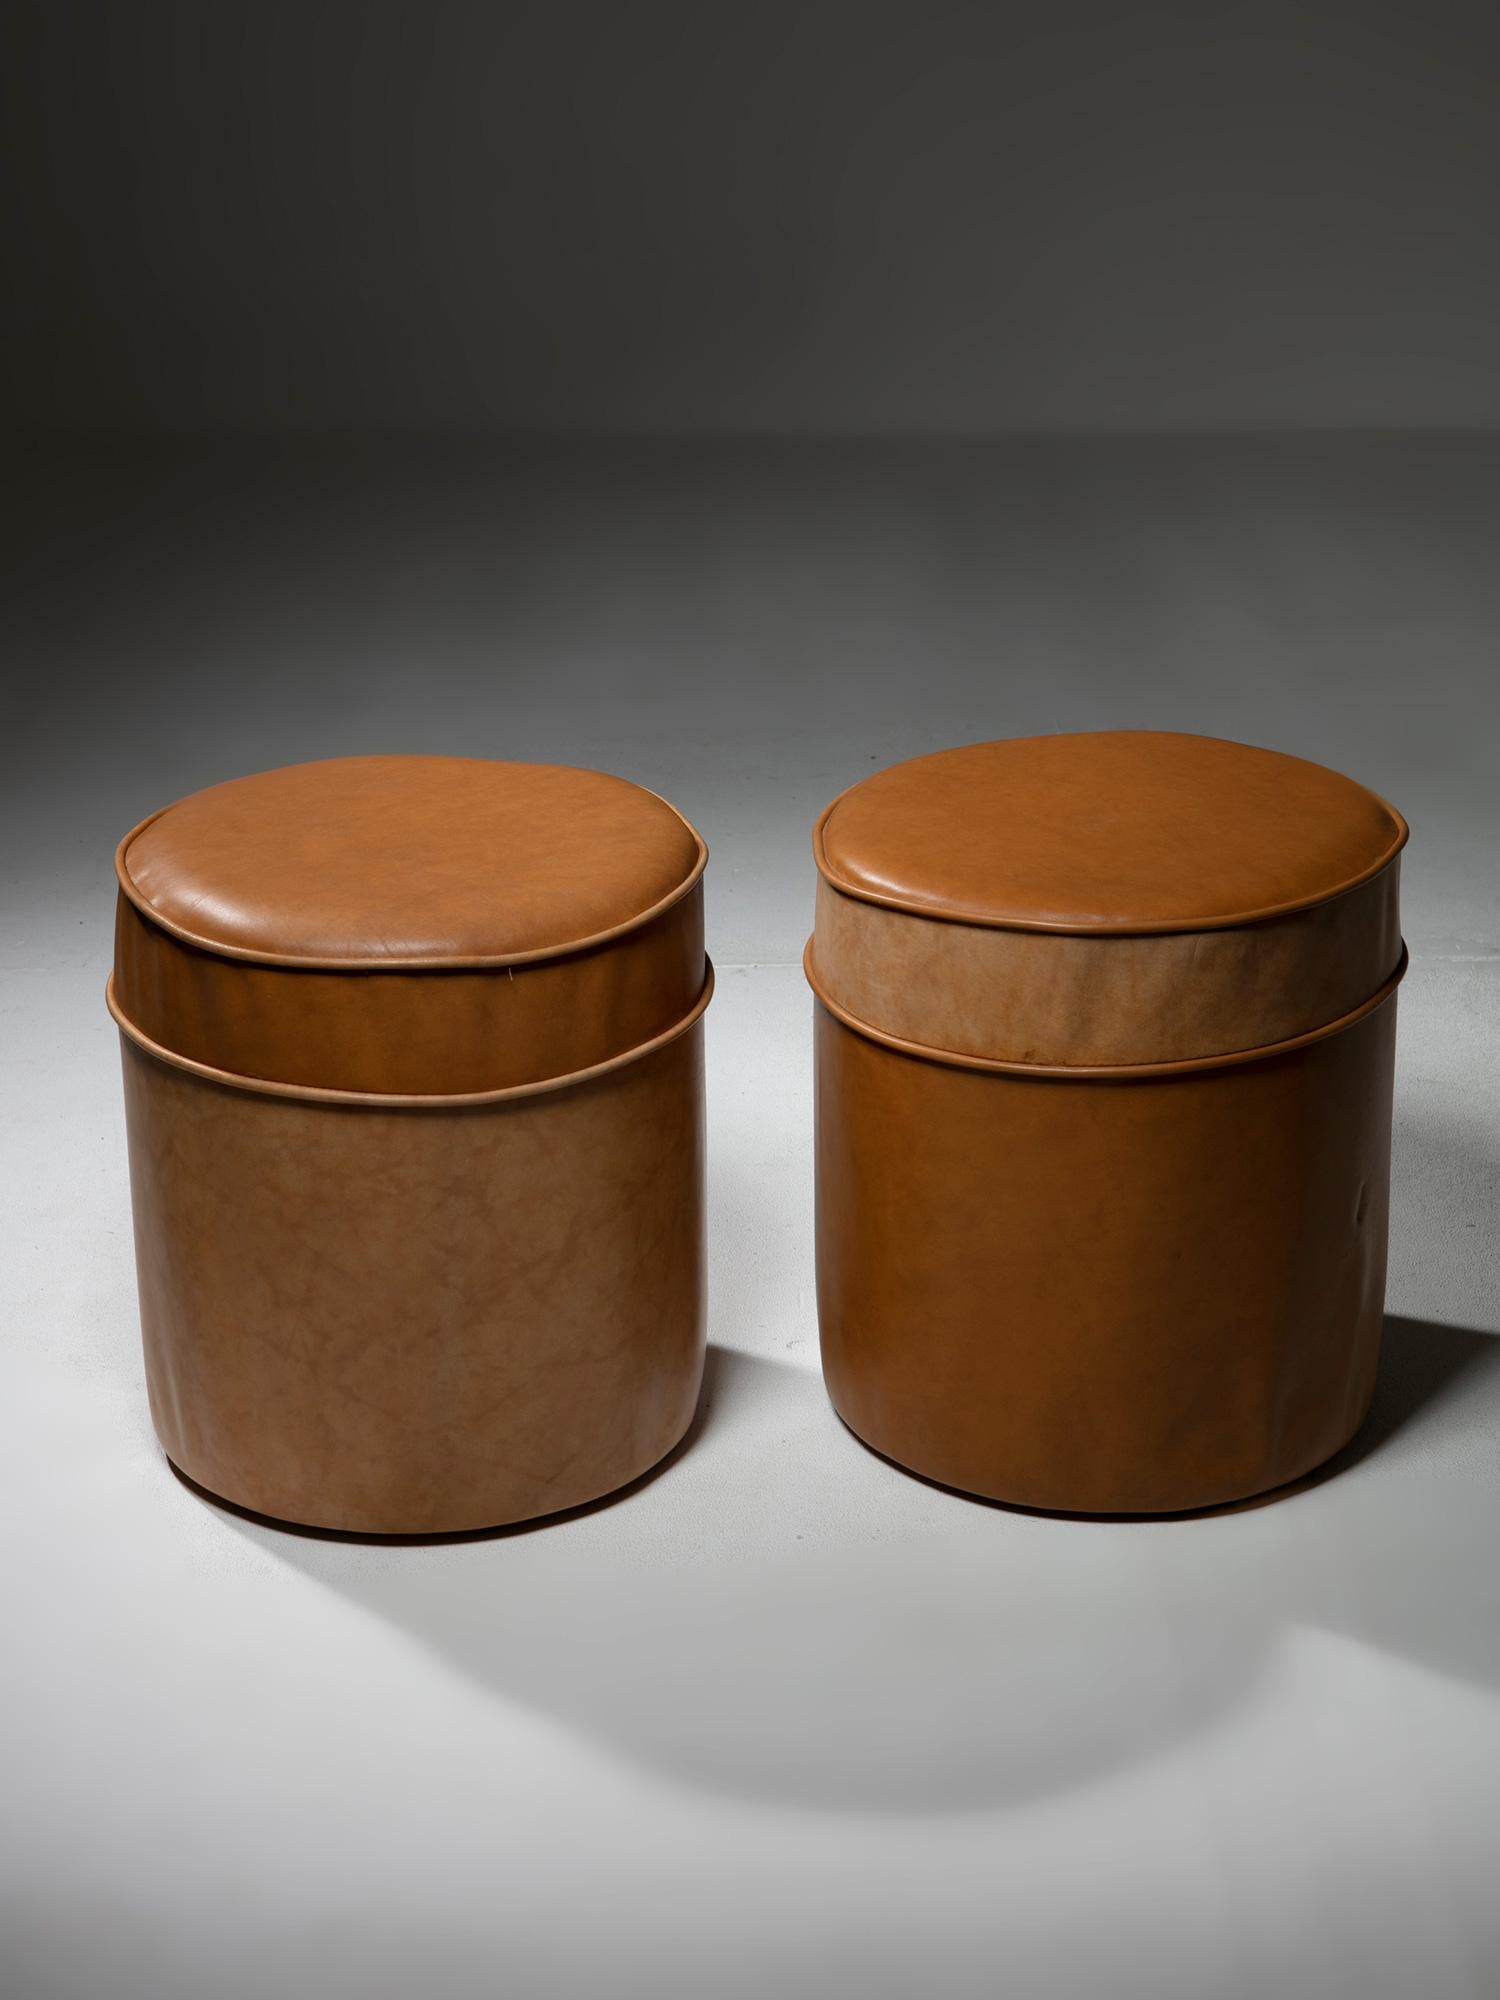 Cuir Ensemble de quatre tabourets ronds en cuir, Italie, années 1970 en vente